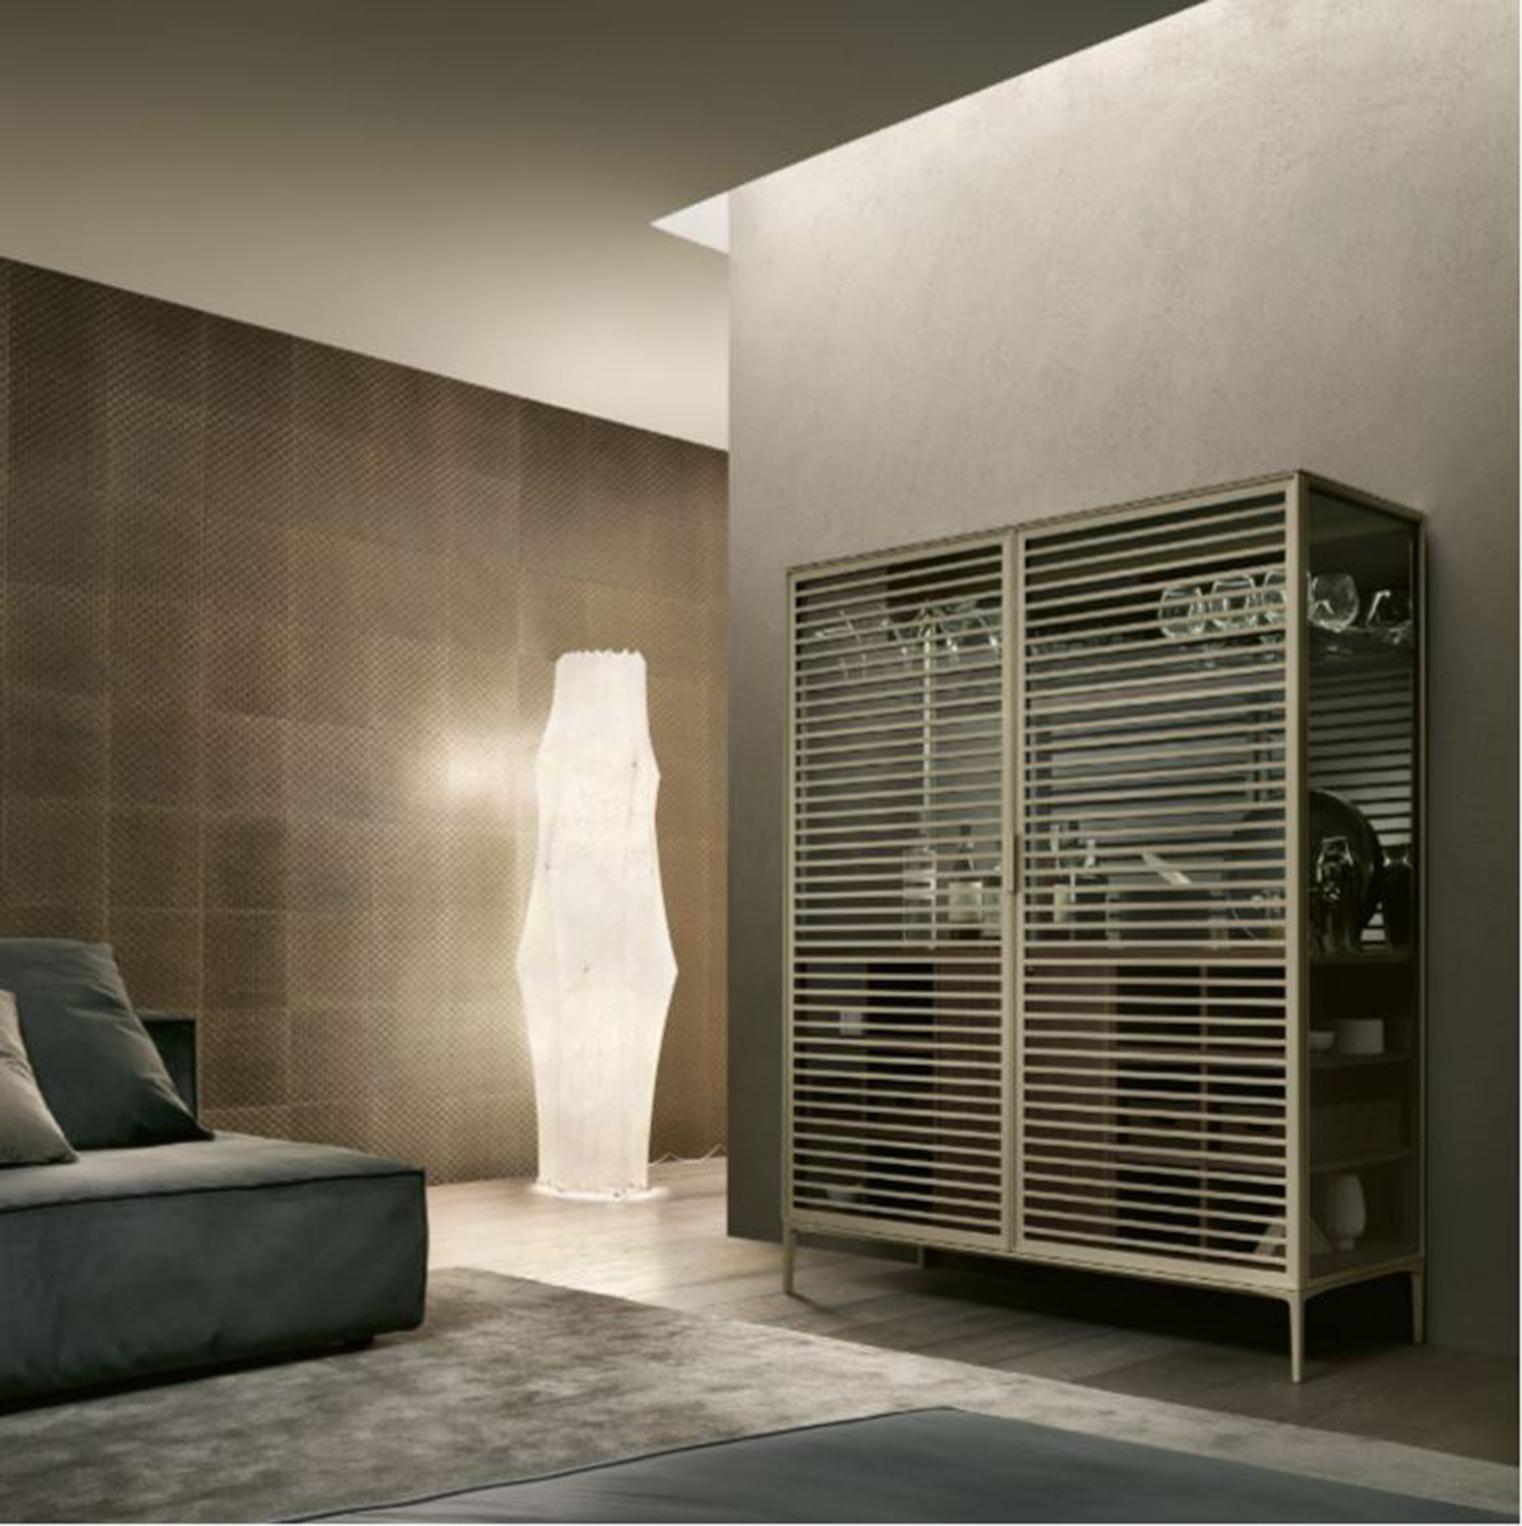 Le meuble de bar Alambra, conçu par Giuseppe Bavuso, est une version bar du meuble standard en verre et en bois de noyer. Il est équipé d'un réfrigérateur interne, de compartiments ouverts et d'une porte en noyer, d'un plateau et d'une poignée en